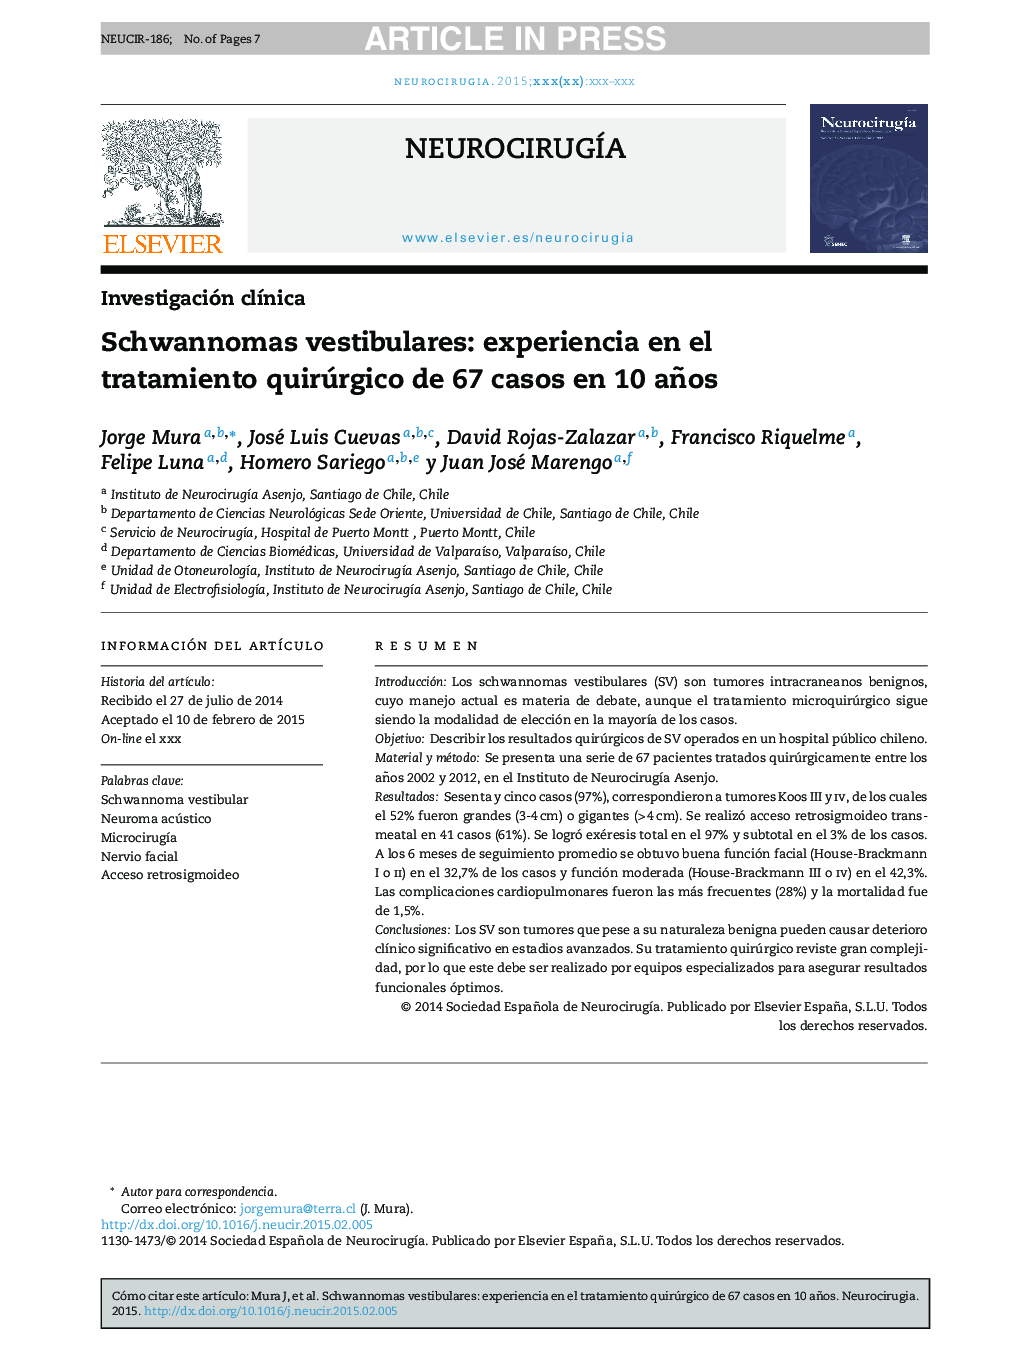 Schwannomas vestibulares: experiencia en el tratamiento quirúrgico de 67 casos en 10 años